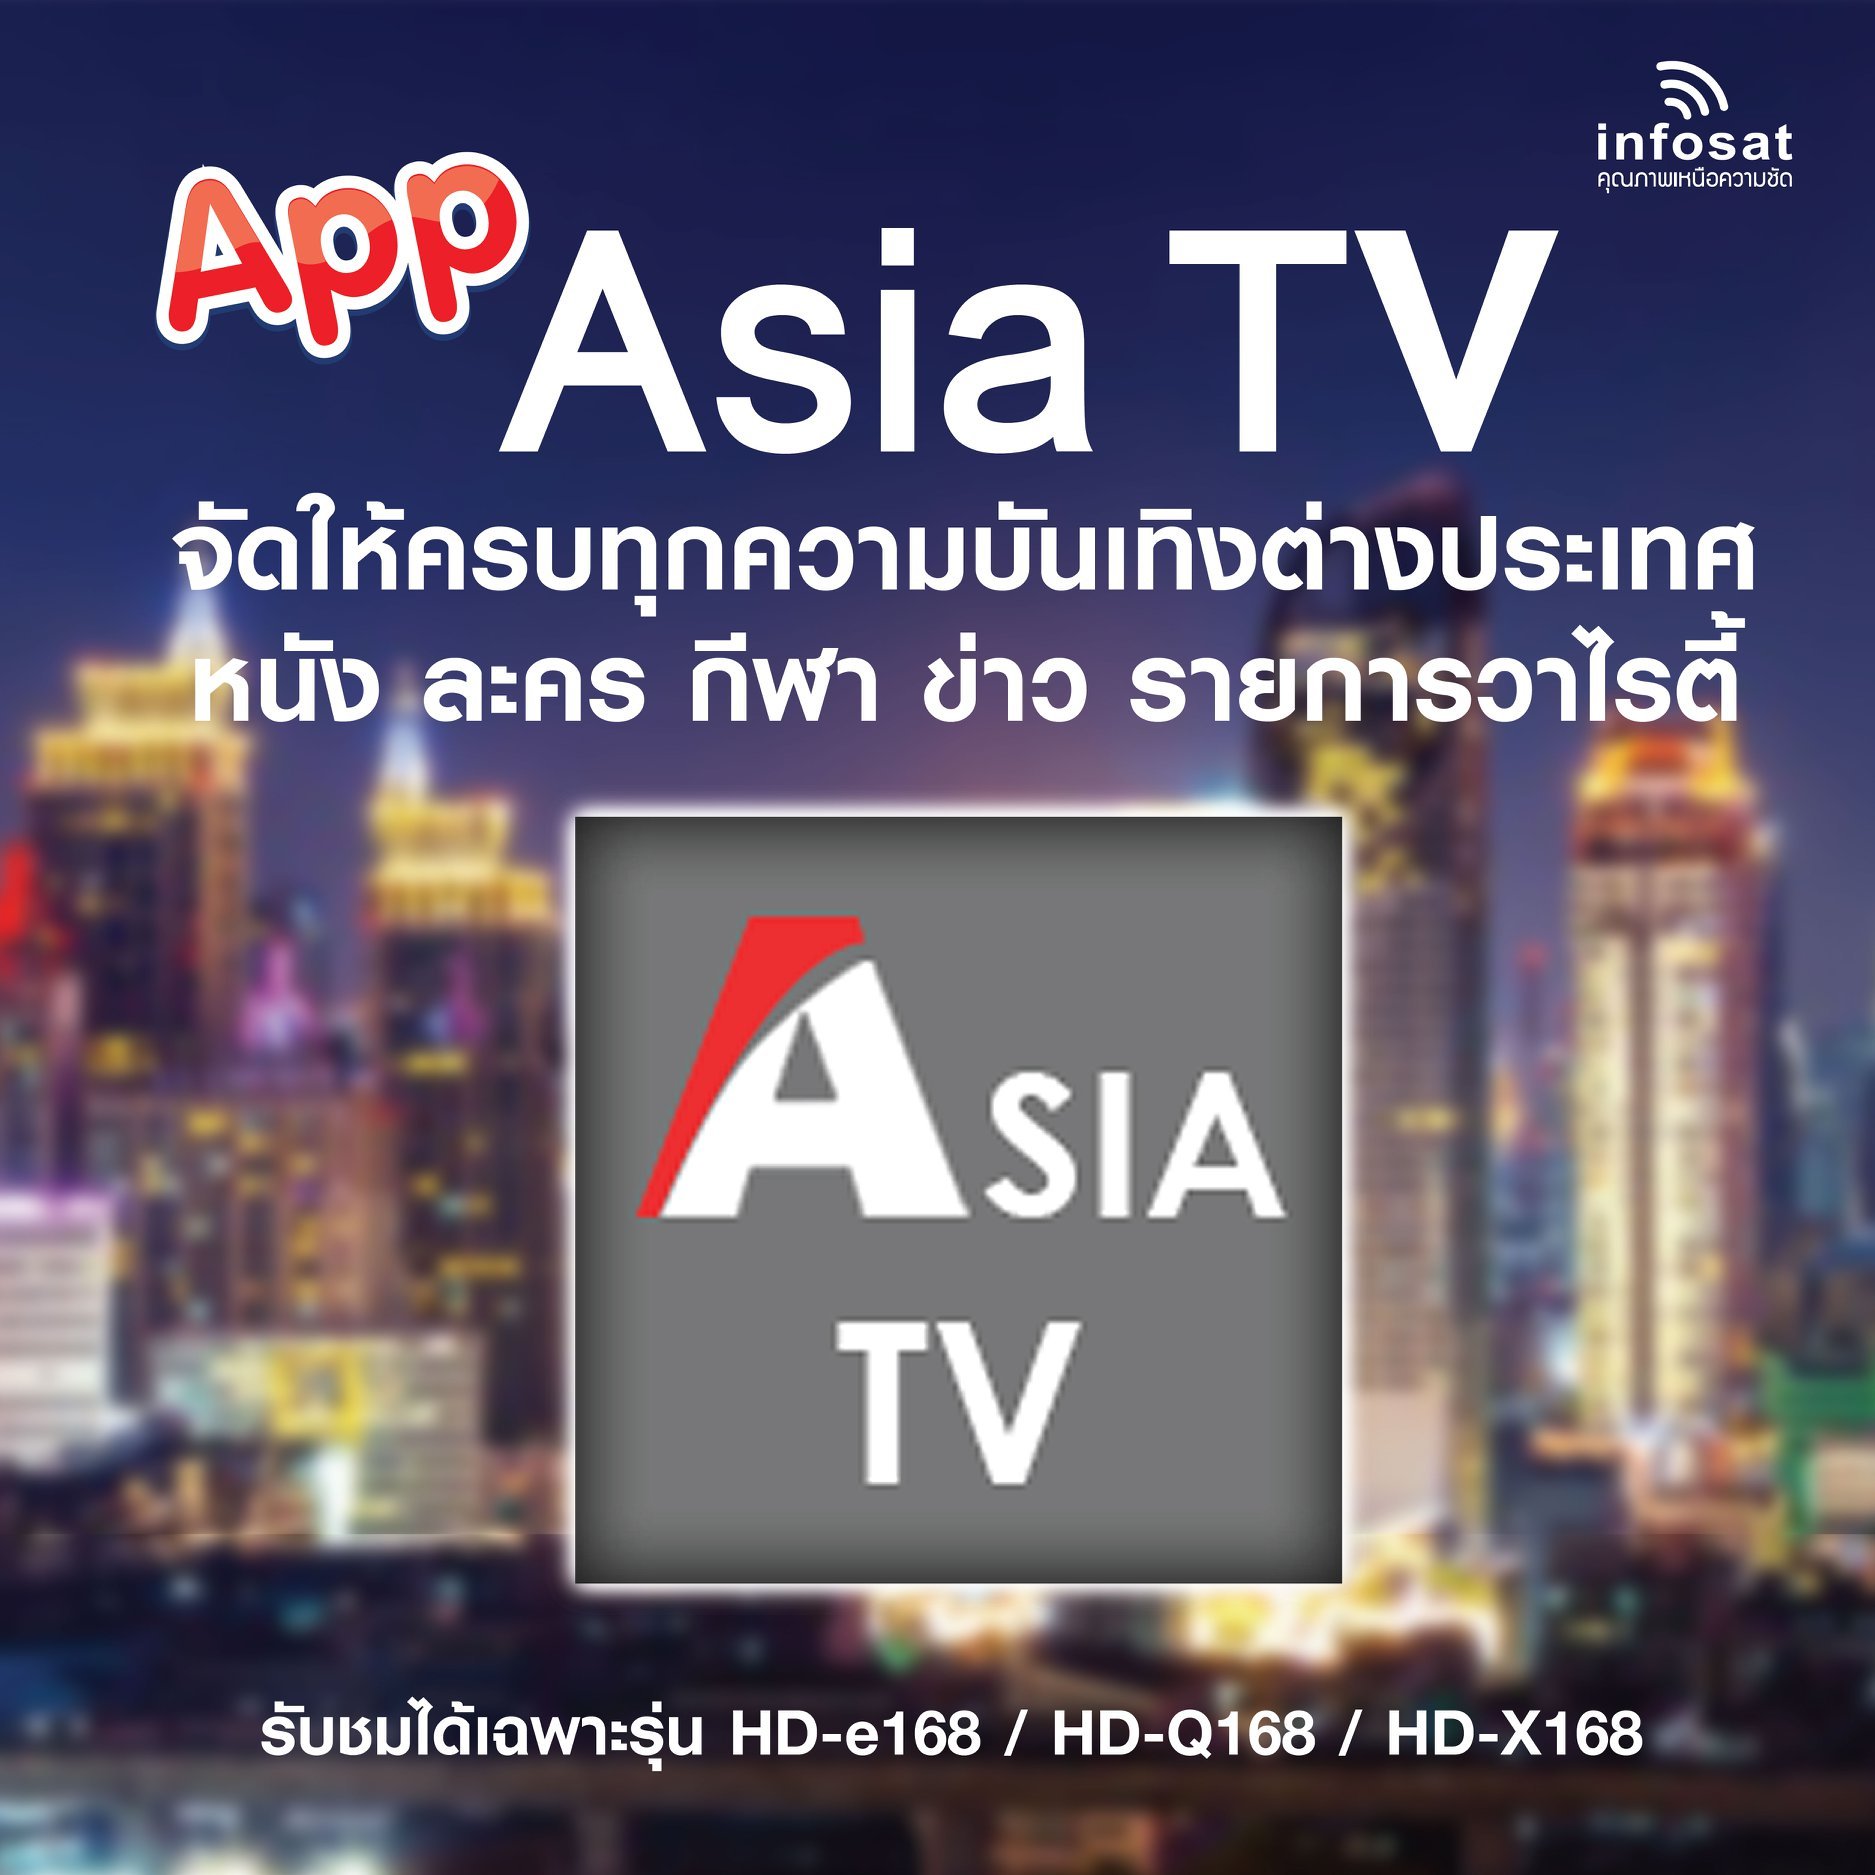 APP ASIA TV จัดให้ครบทุกความบันเทิงต่างประเทศ หนัง ละคร กีฬา ข่าว รายการวาไรตี้